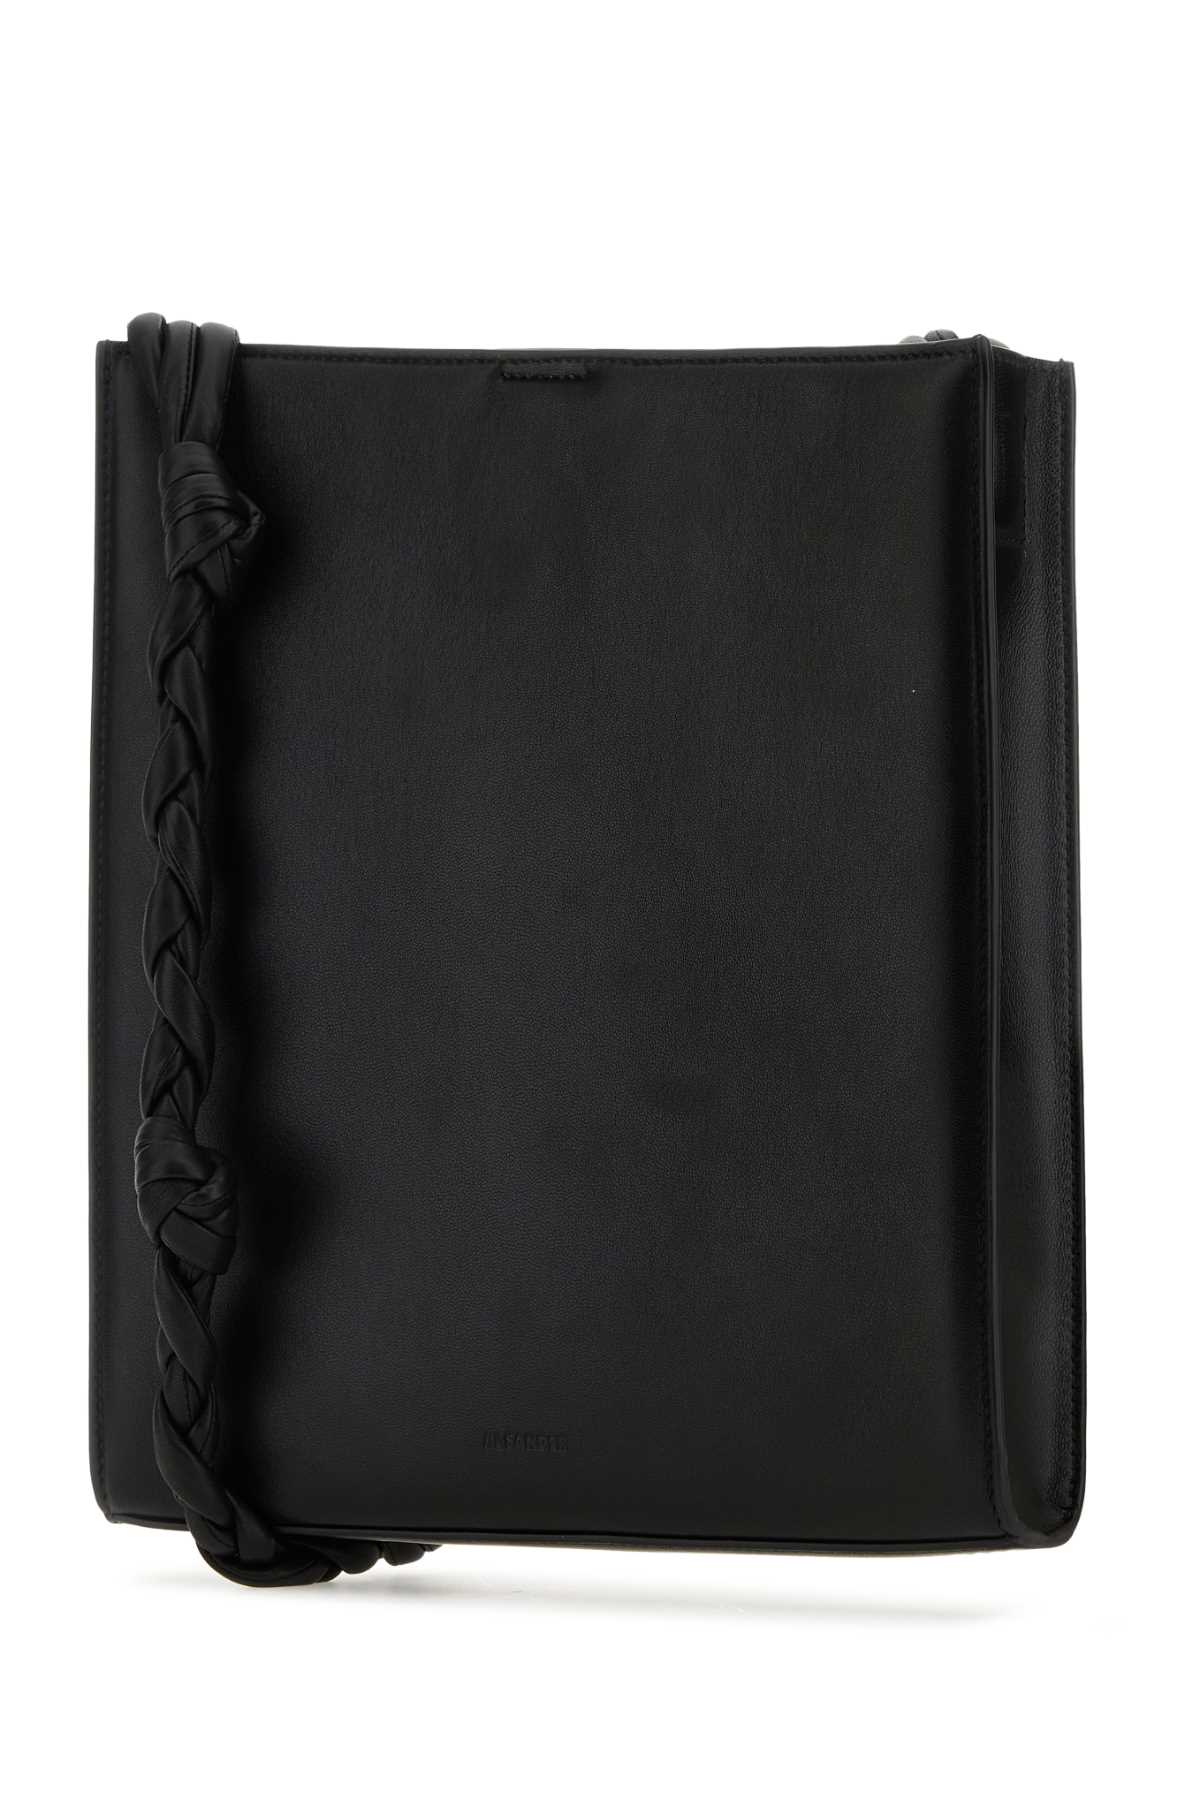 Jil Sander Black Leather Medium Tangle Shoulder Bag In 001